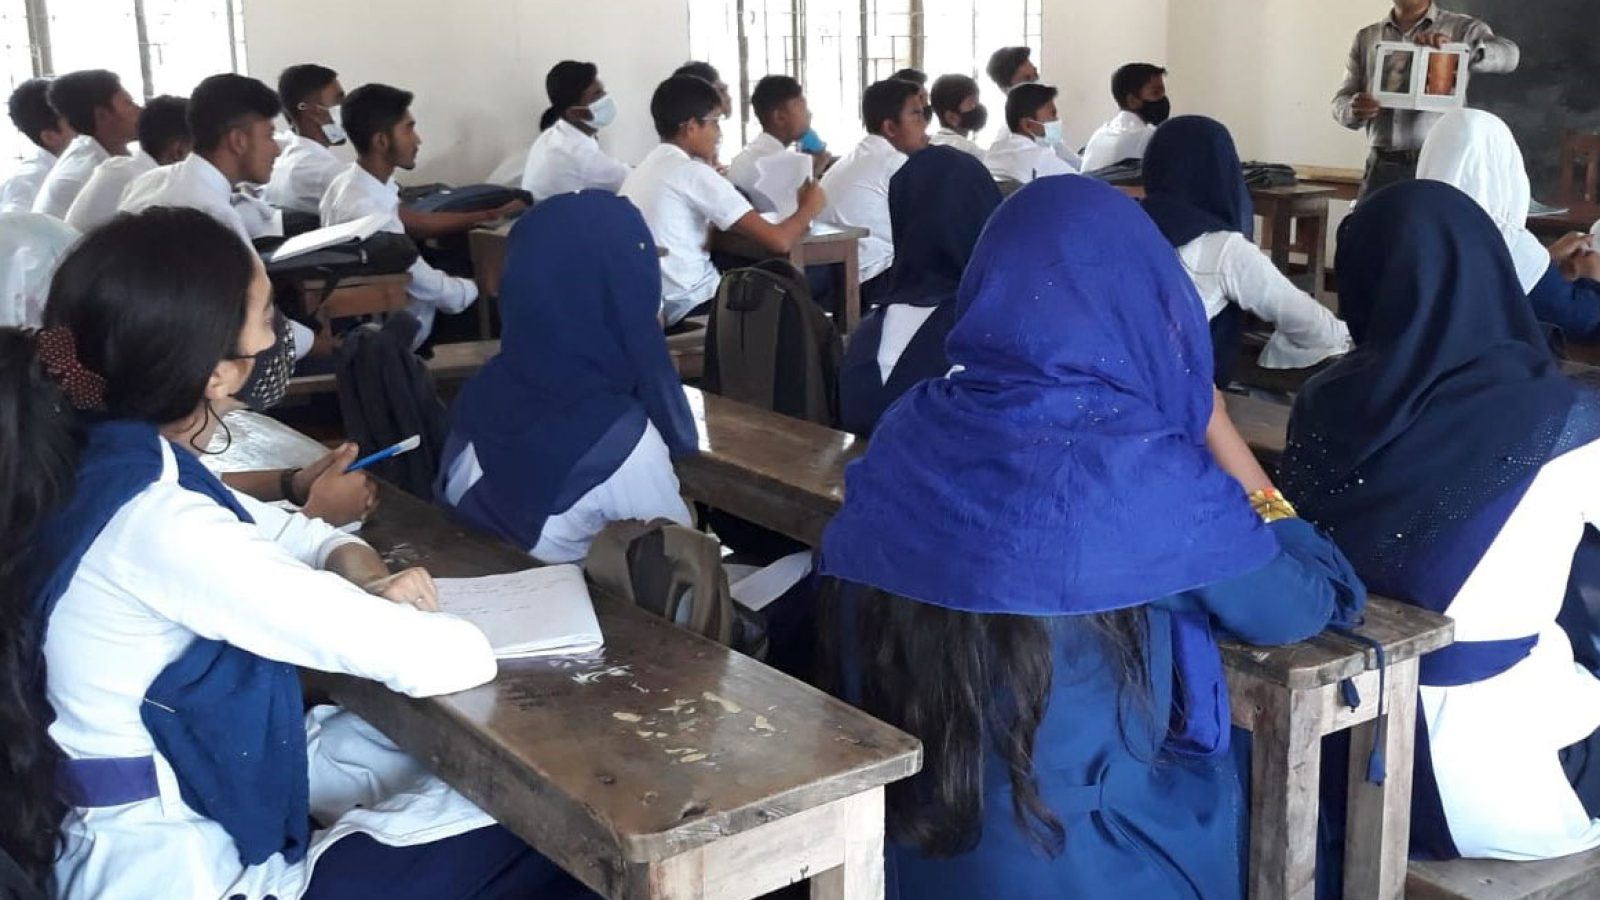 Lernende im Klassenzimmer in Bangladesch